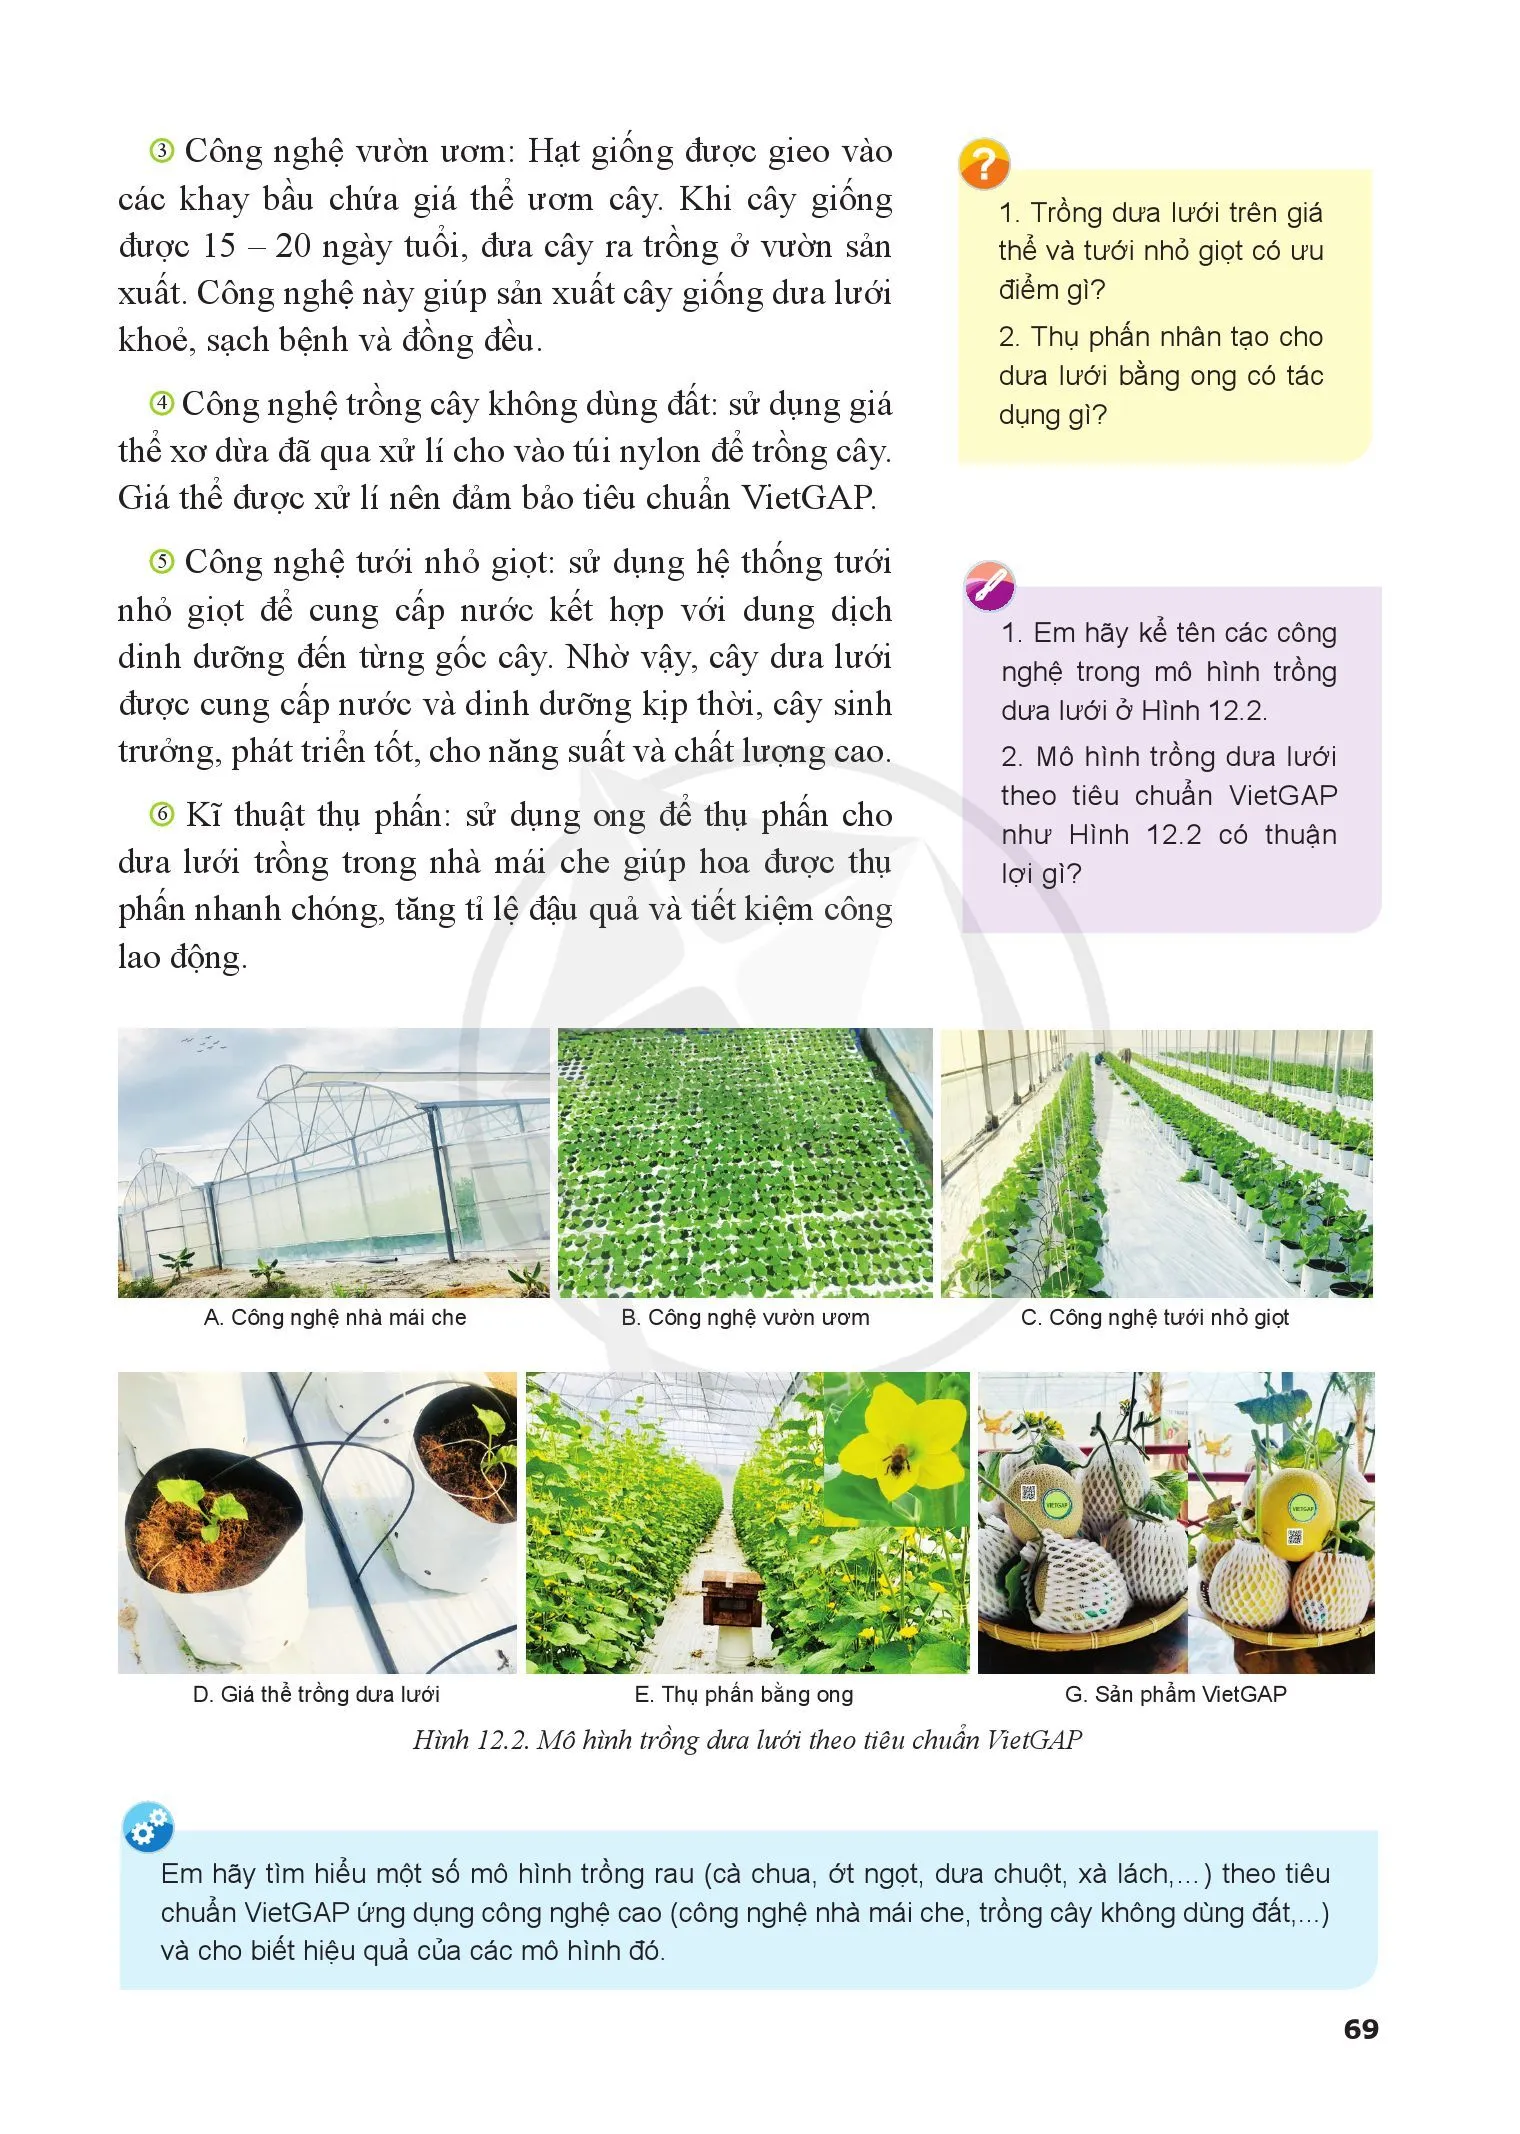 Bài 12. Một số mô hình trồng trọt theo tiêu chuẩn VietGAP